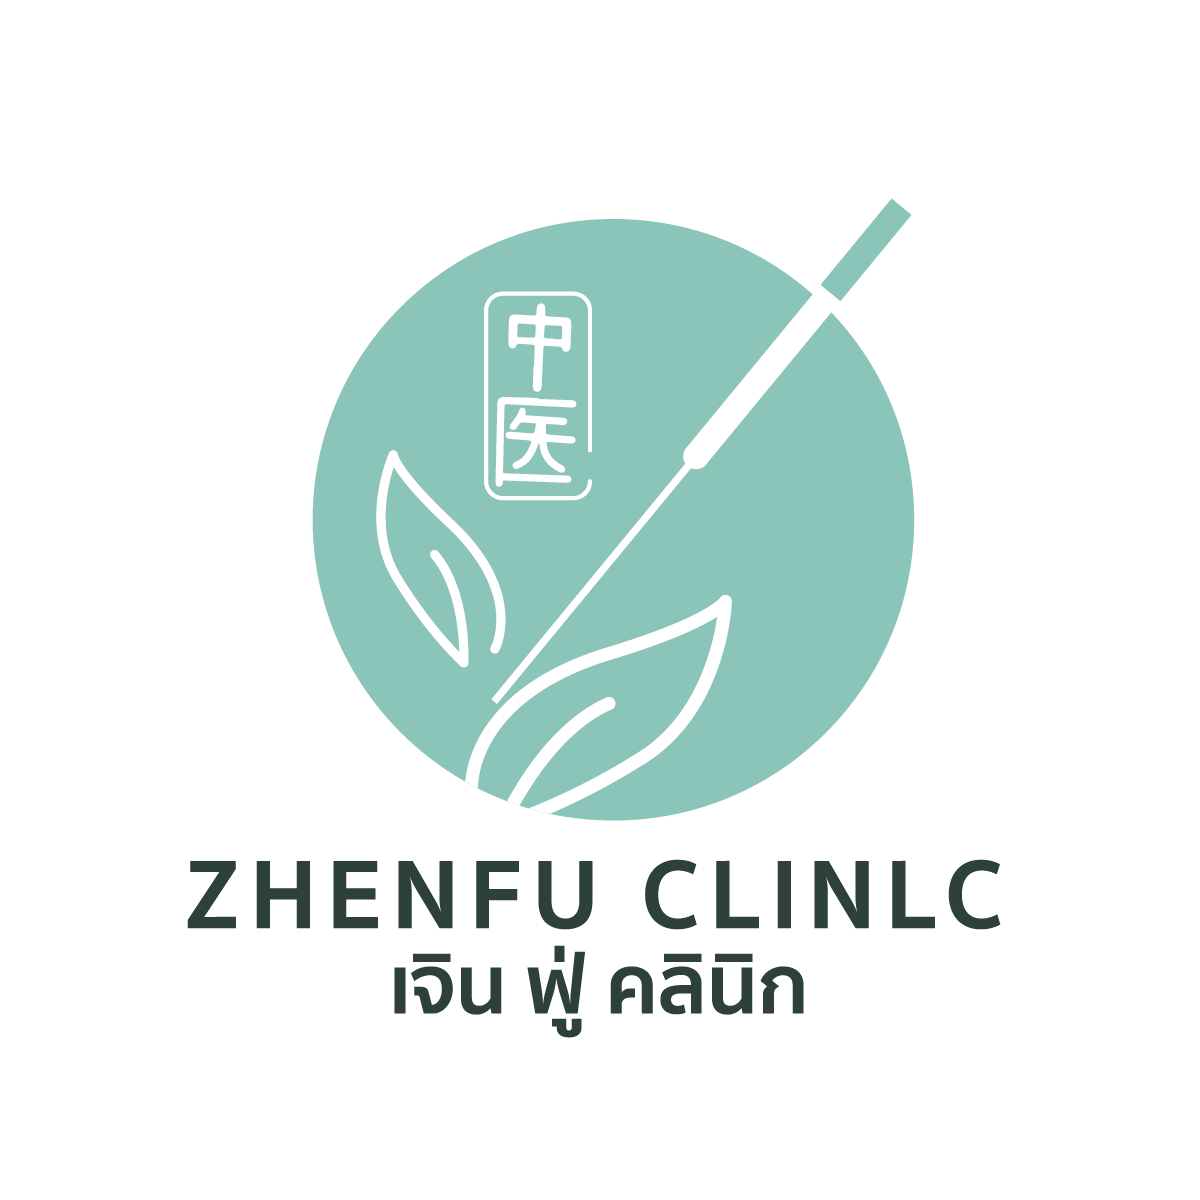 zhenfuclinic